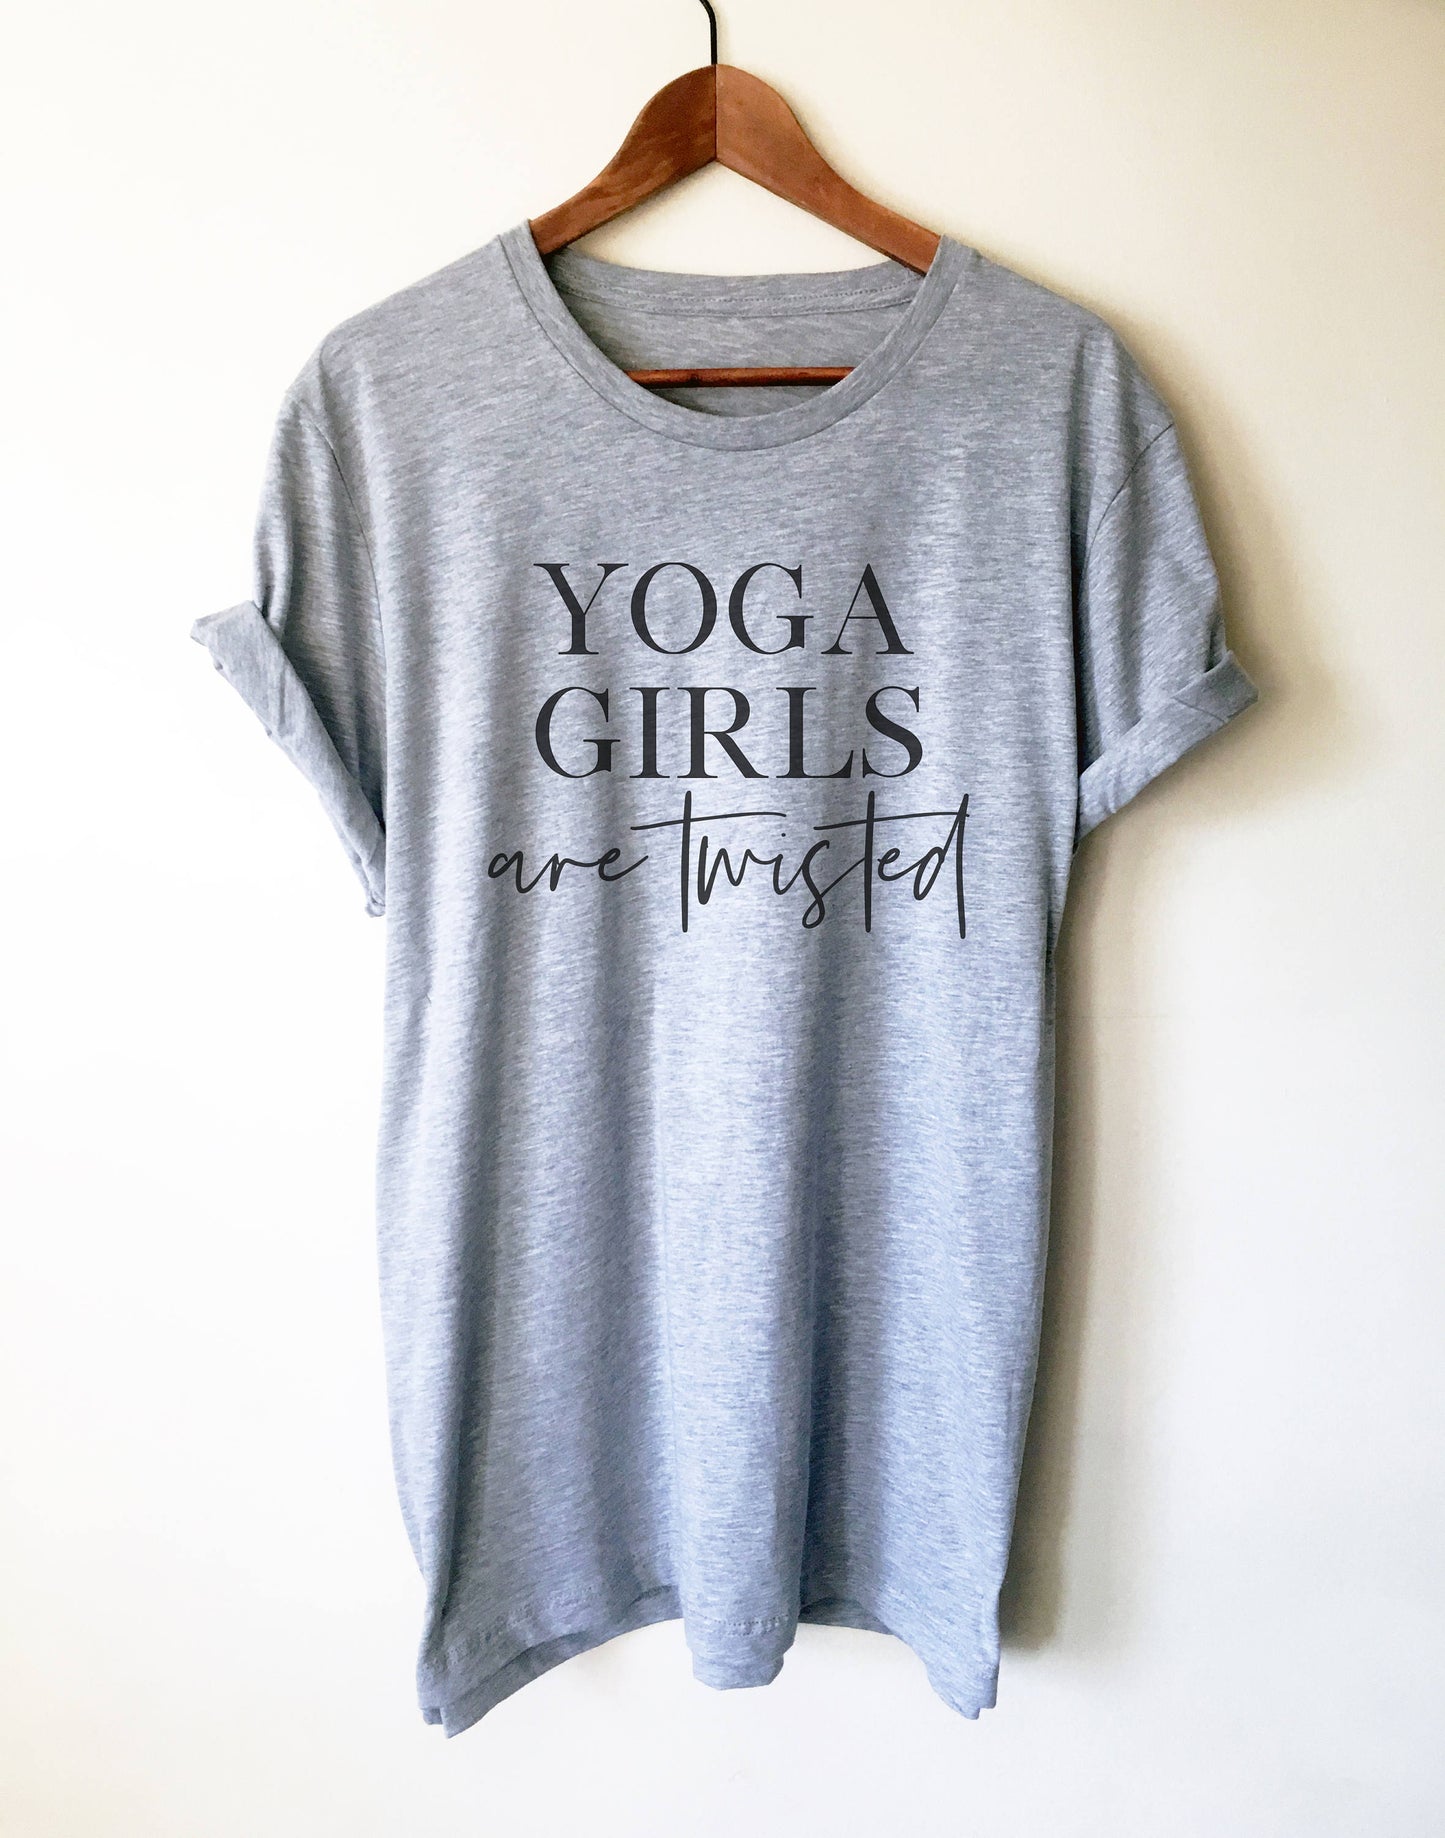 Yoga Girls Are Twisted Unisex Shirt - Yoga Shirt, Zen Yoga Clothing, Yoga Workout Clothes, Yoga Wear, Yoga Clothes, Yoga T Shirts Funny